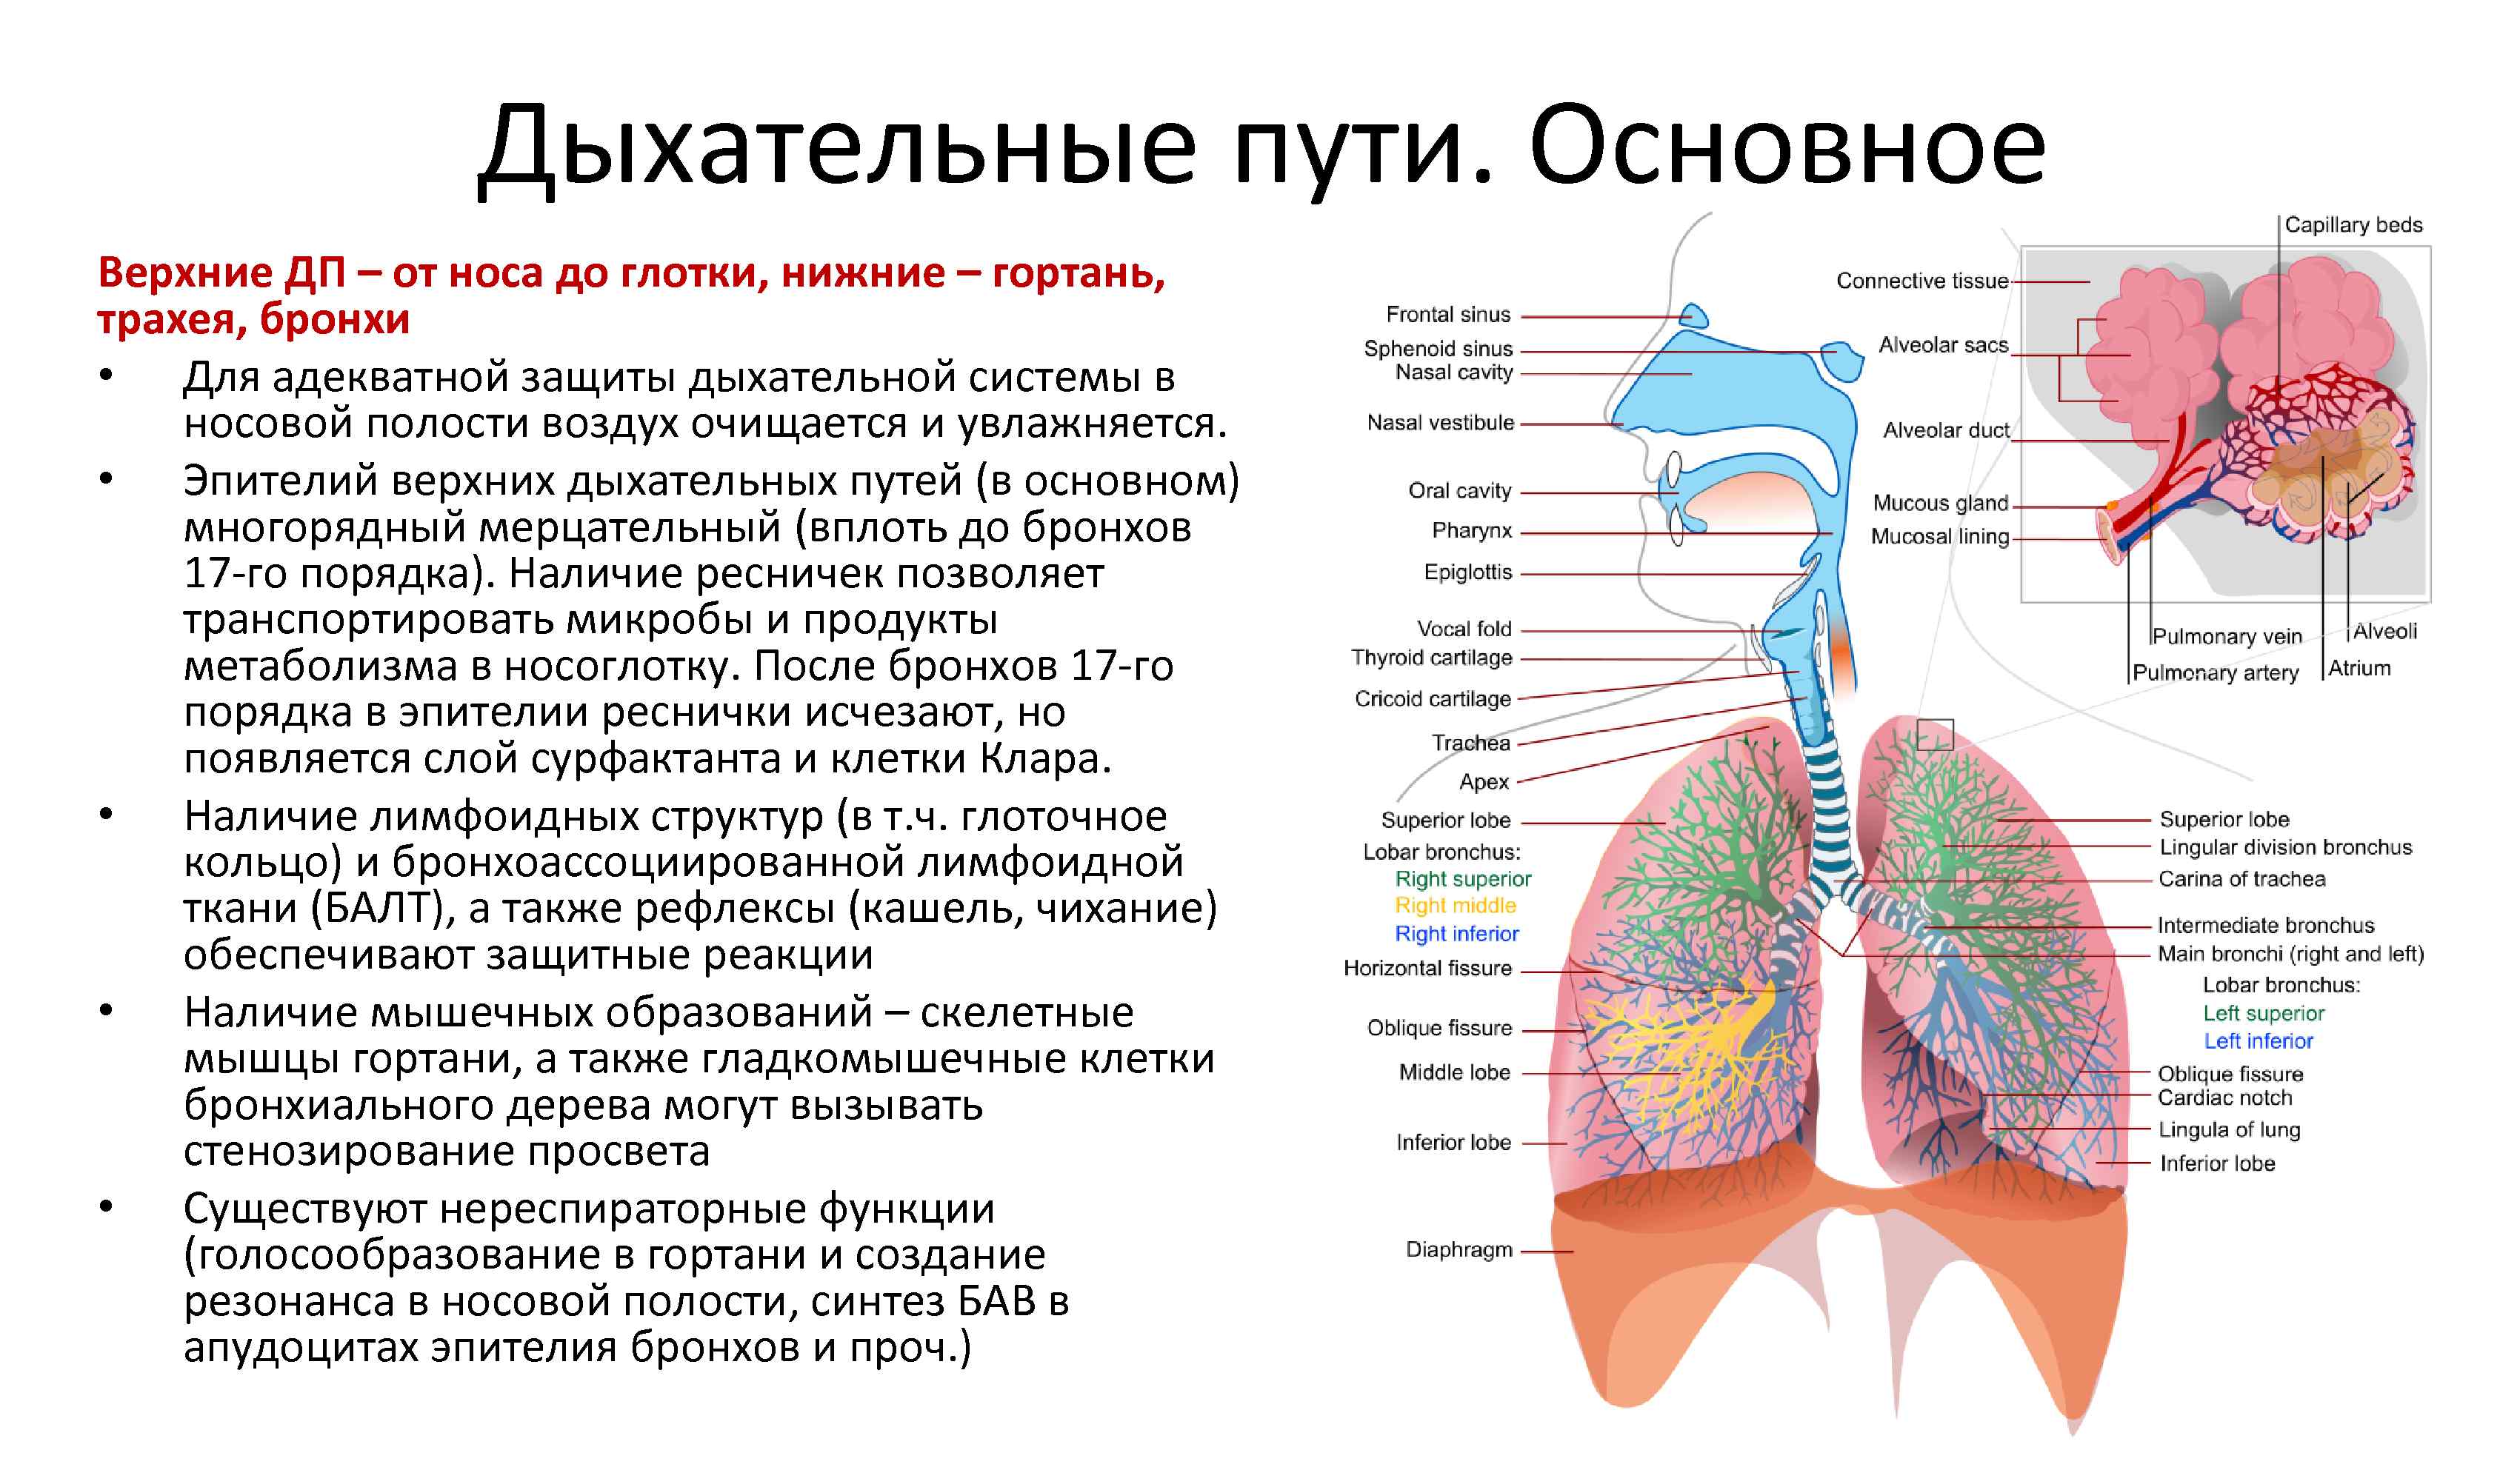 При вдохе воздух проходит через. Дыхательная система человека трахея и бронхи. Дыхательная система бронхи анатомия человека. Дыхательная система воздухоносные пути и дыхательная часть. Воздухоносные дыхательные пути.